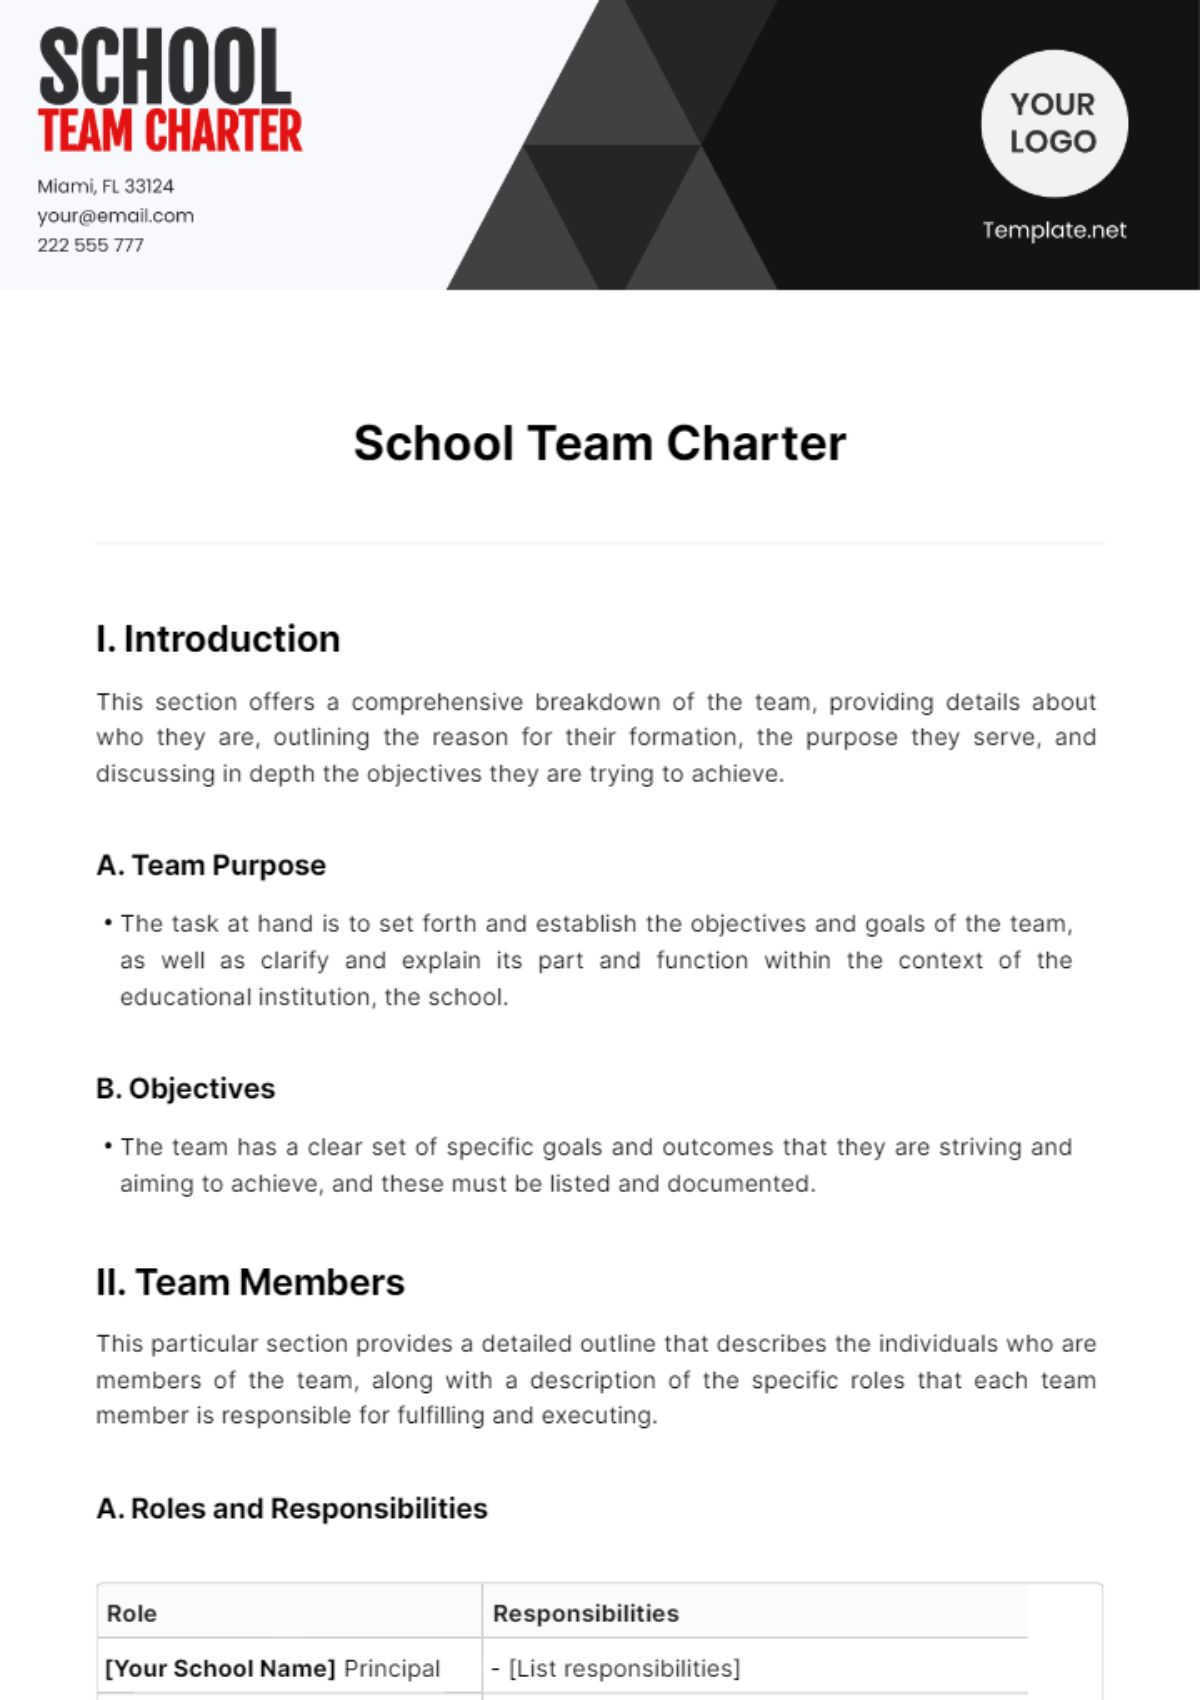 School Team Charter Template